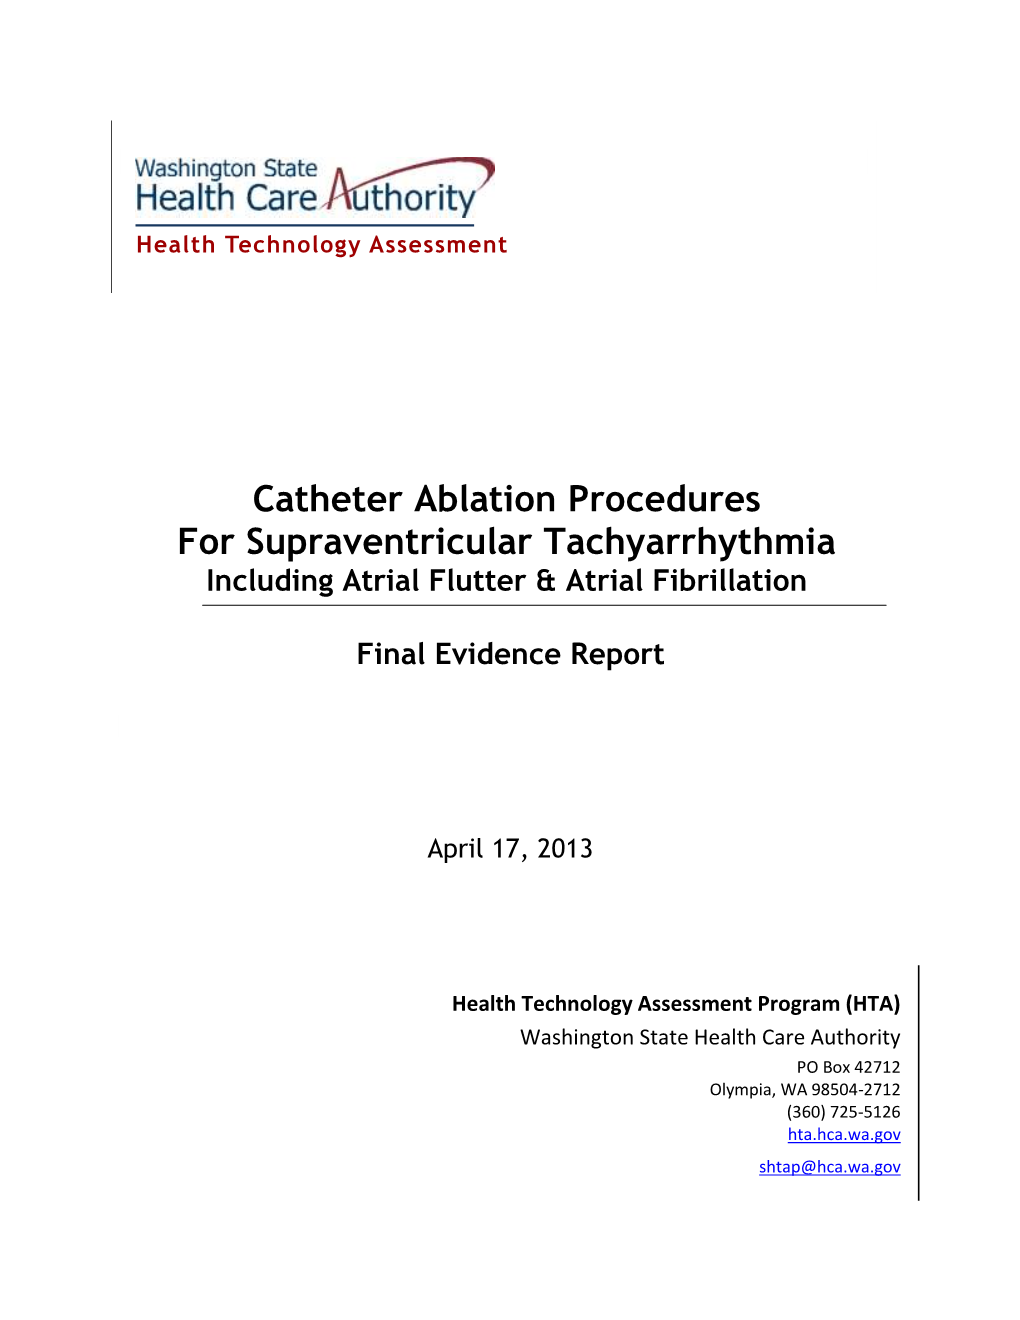 Catheter Ablation Procedures for Supraventricular Tachyarrhythmia Including Atrial Flutter & Atrial Fibrillation